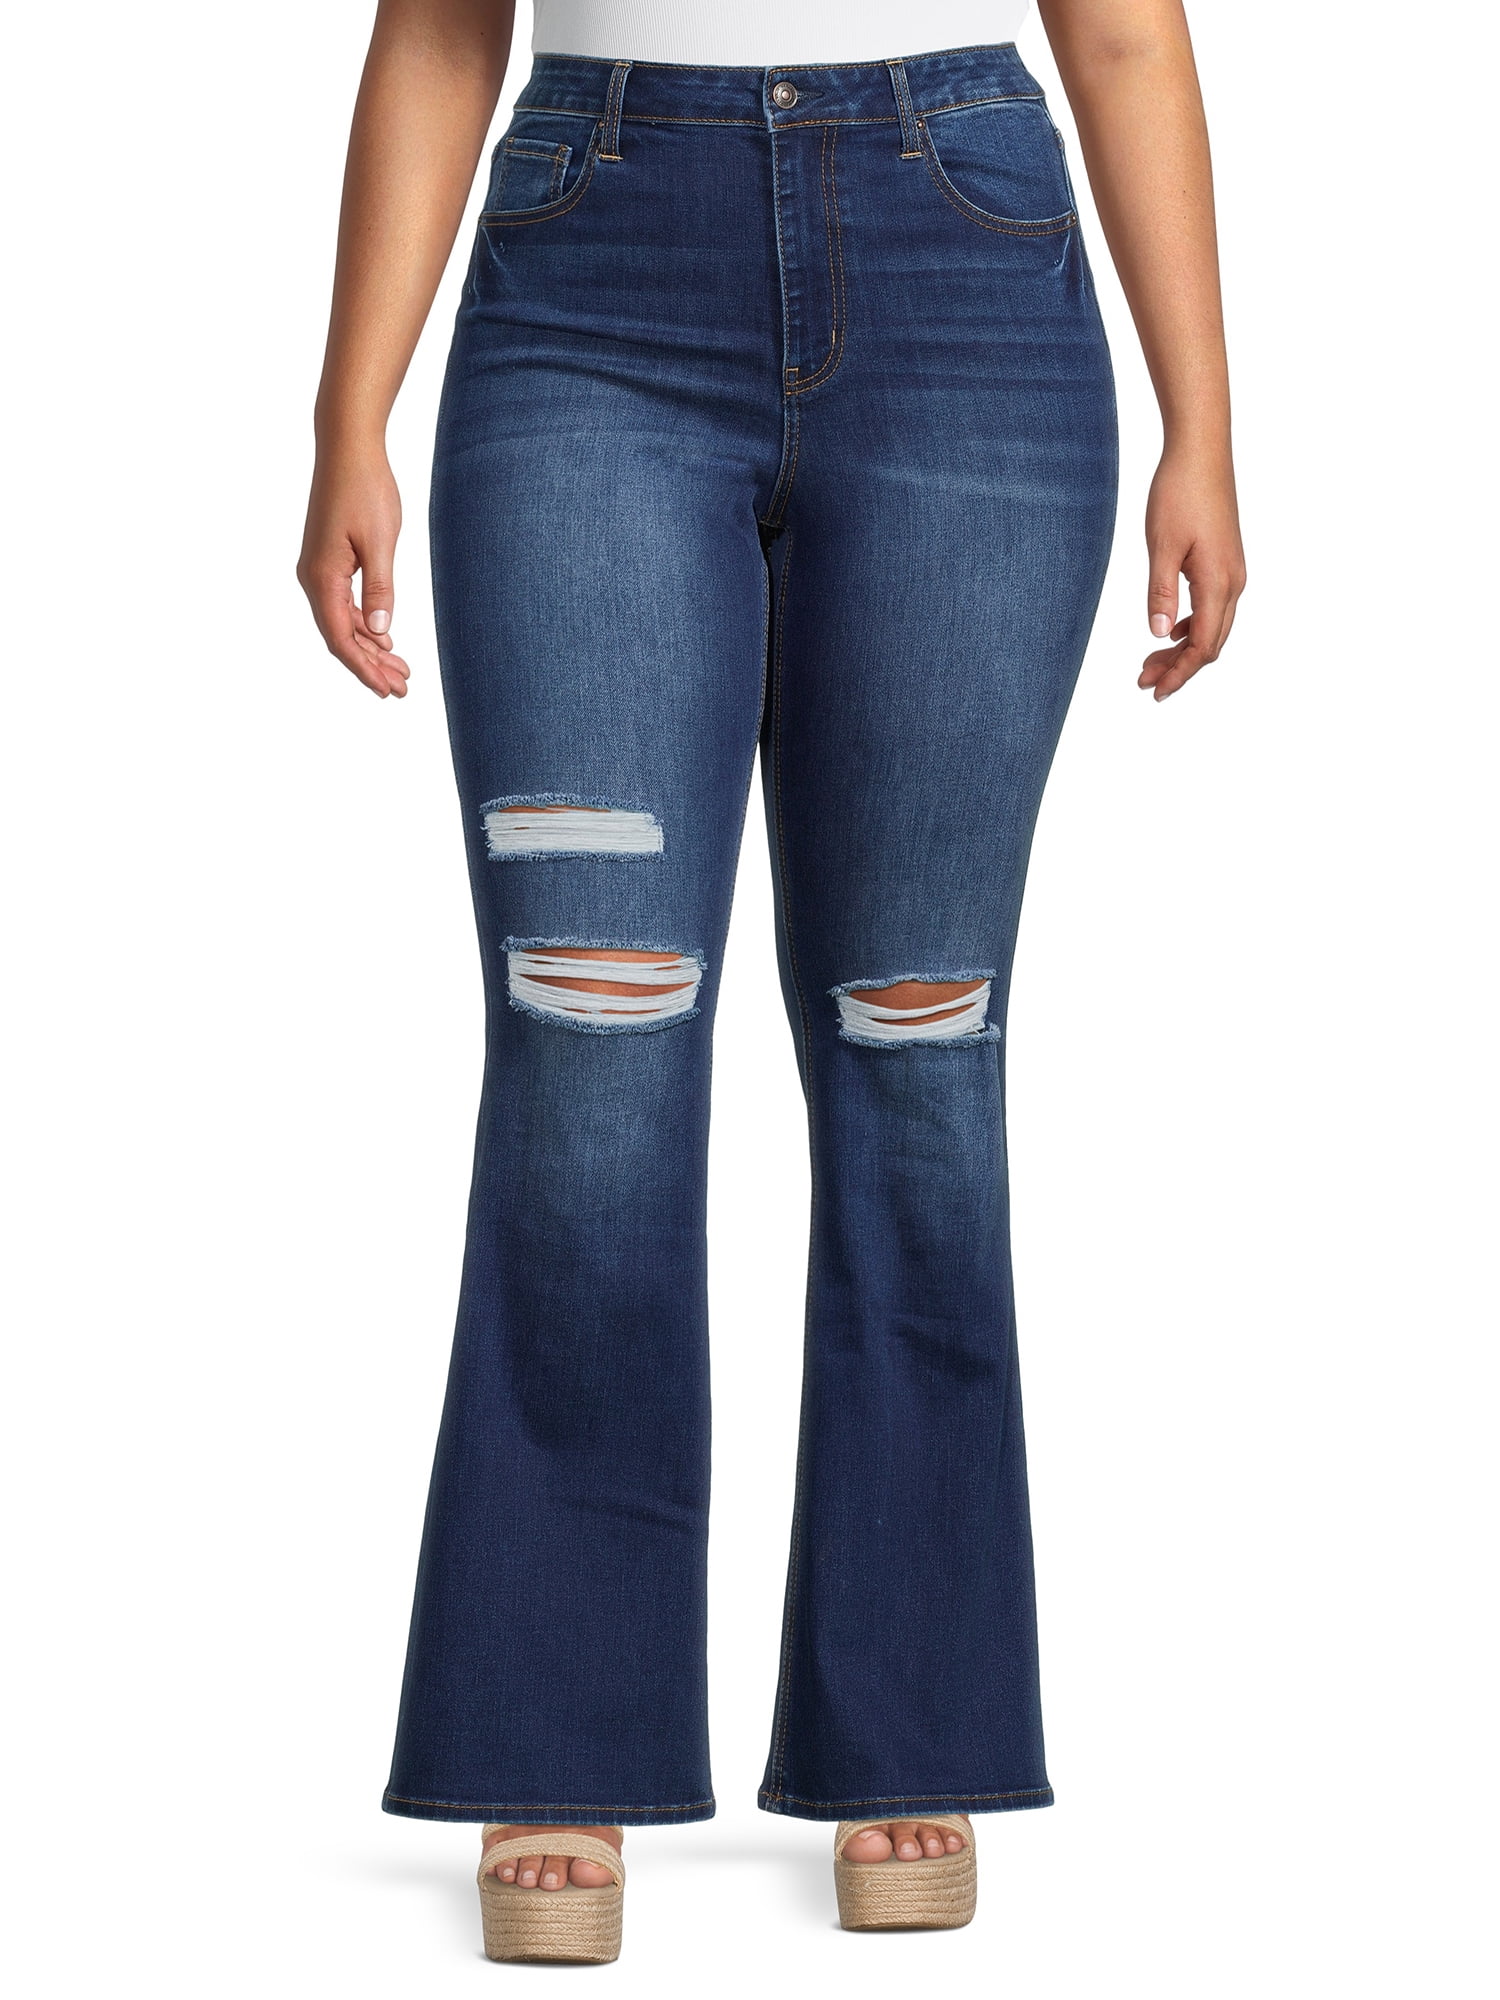 verklaren Middellandse Zee bijstand Wax Jean Juniors' Plus Size High Rise Destructed Flare Jeans - Walmart.com